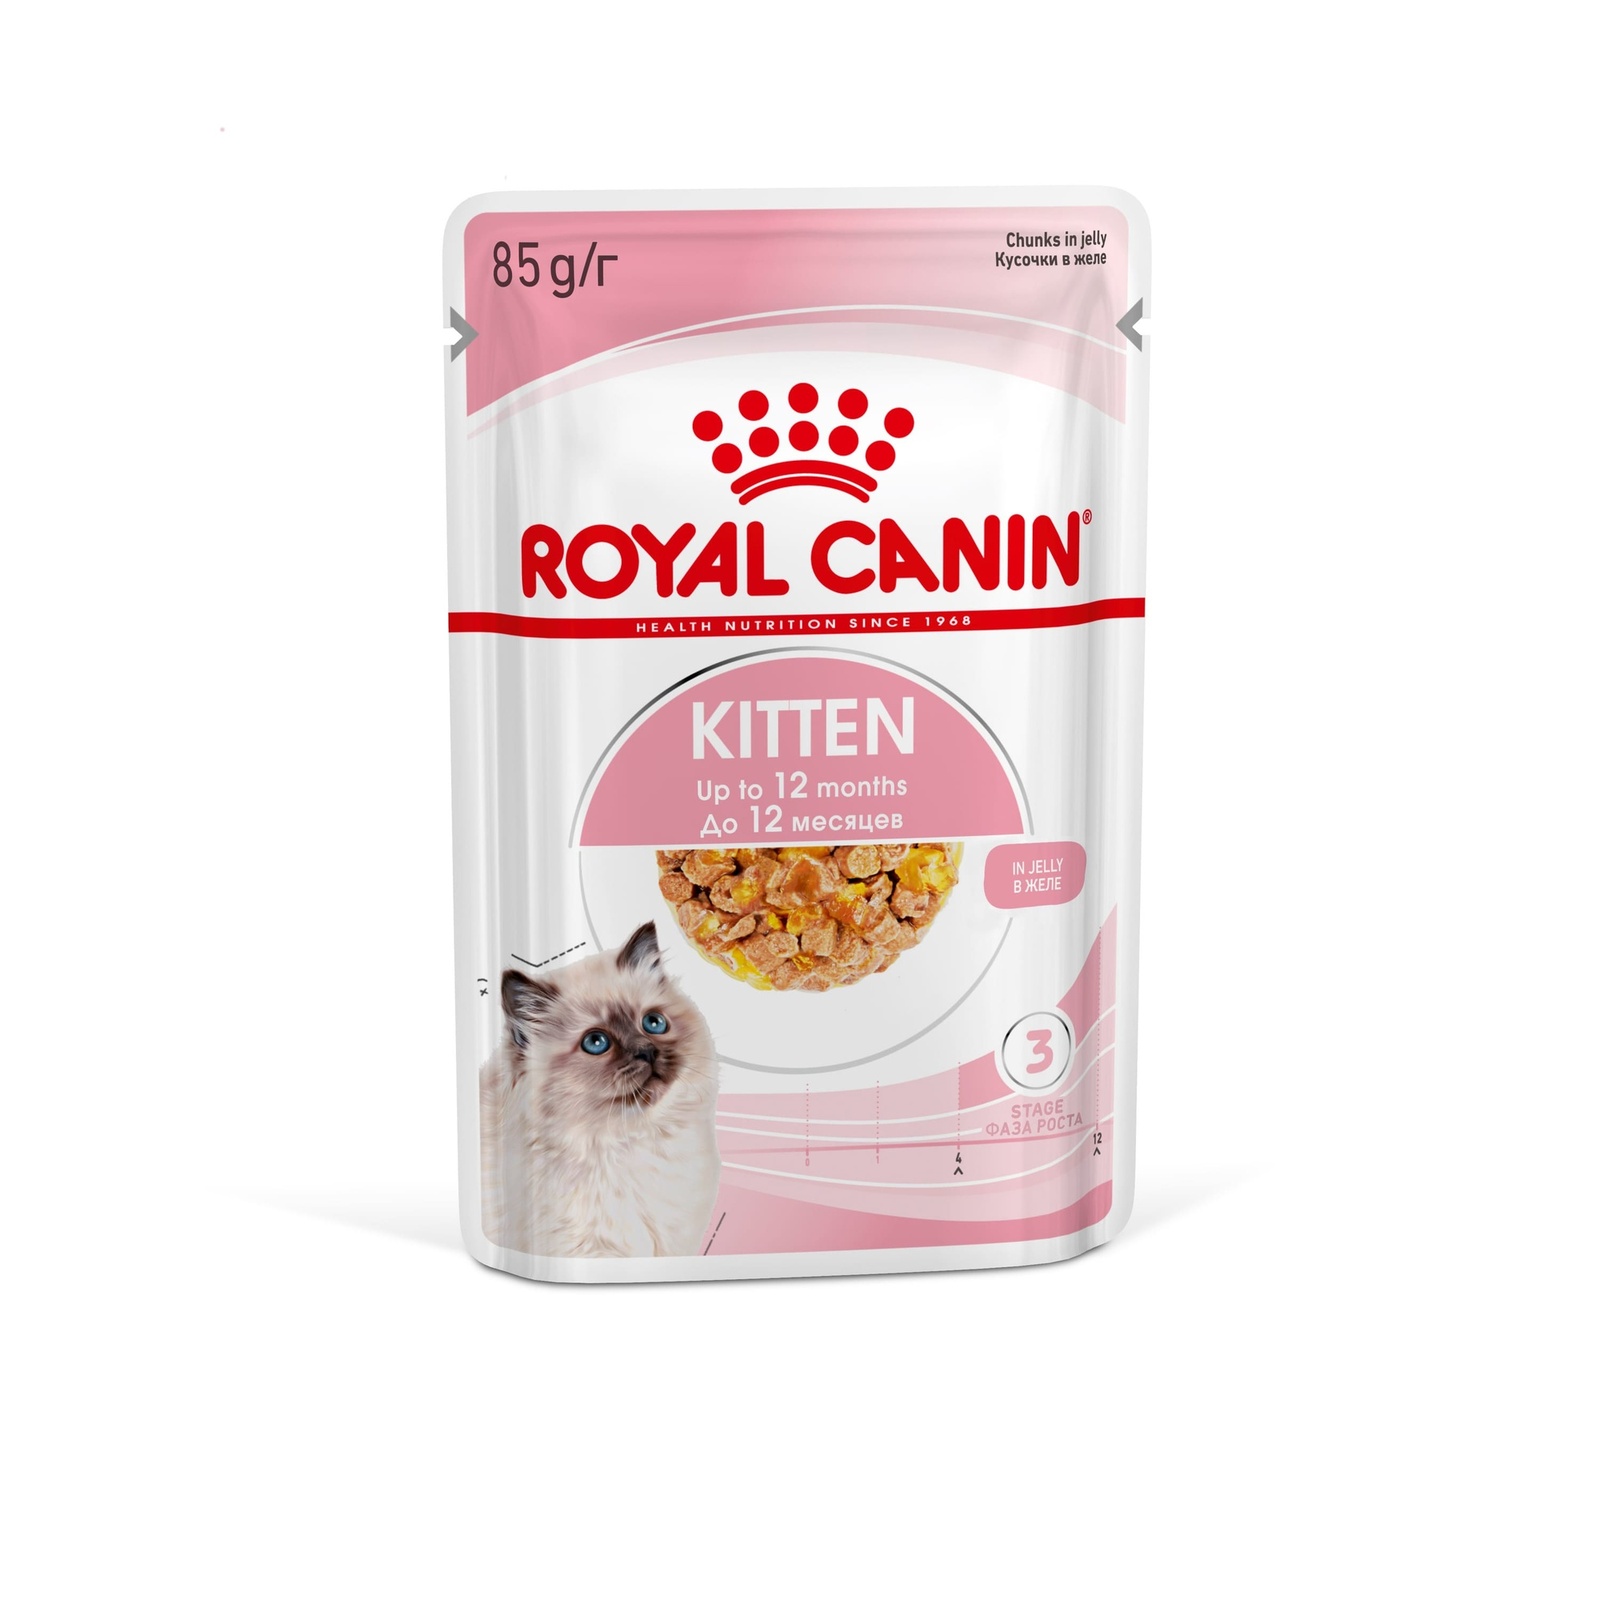 Royal Canin паучи Royal Canin паучи кусочки в желе для котят: 4-12 месяцев (2,38 кг) royal canin вет корма royal canin вет корма для котят от 2 до 10 мес при расстройствах пищеварения 2 кг